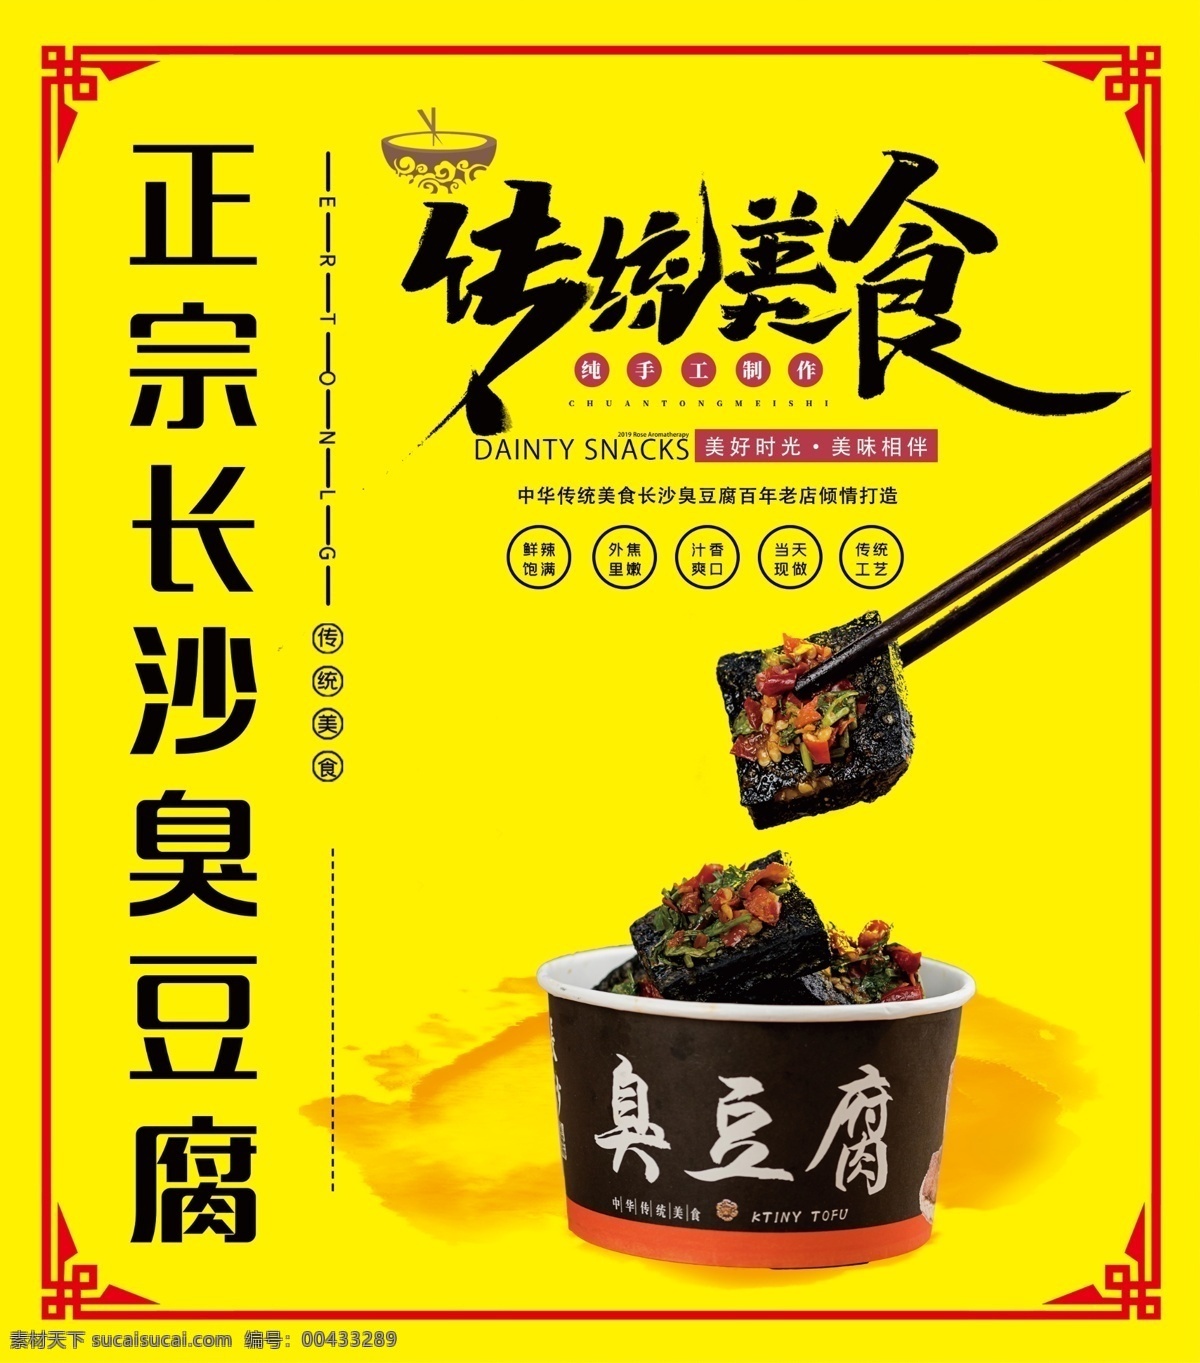 臭豆腐图片 海报 臭豆腐 长沙臭豆腐 豆腐 黑色 传统美食 宣传海报